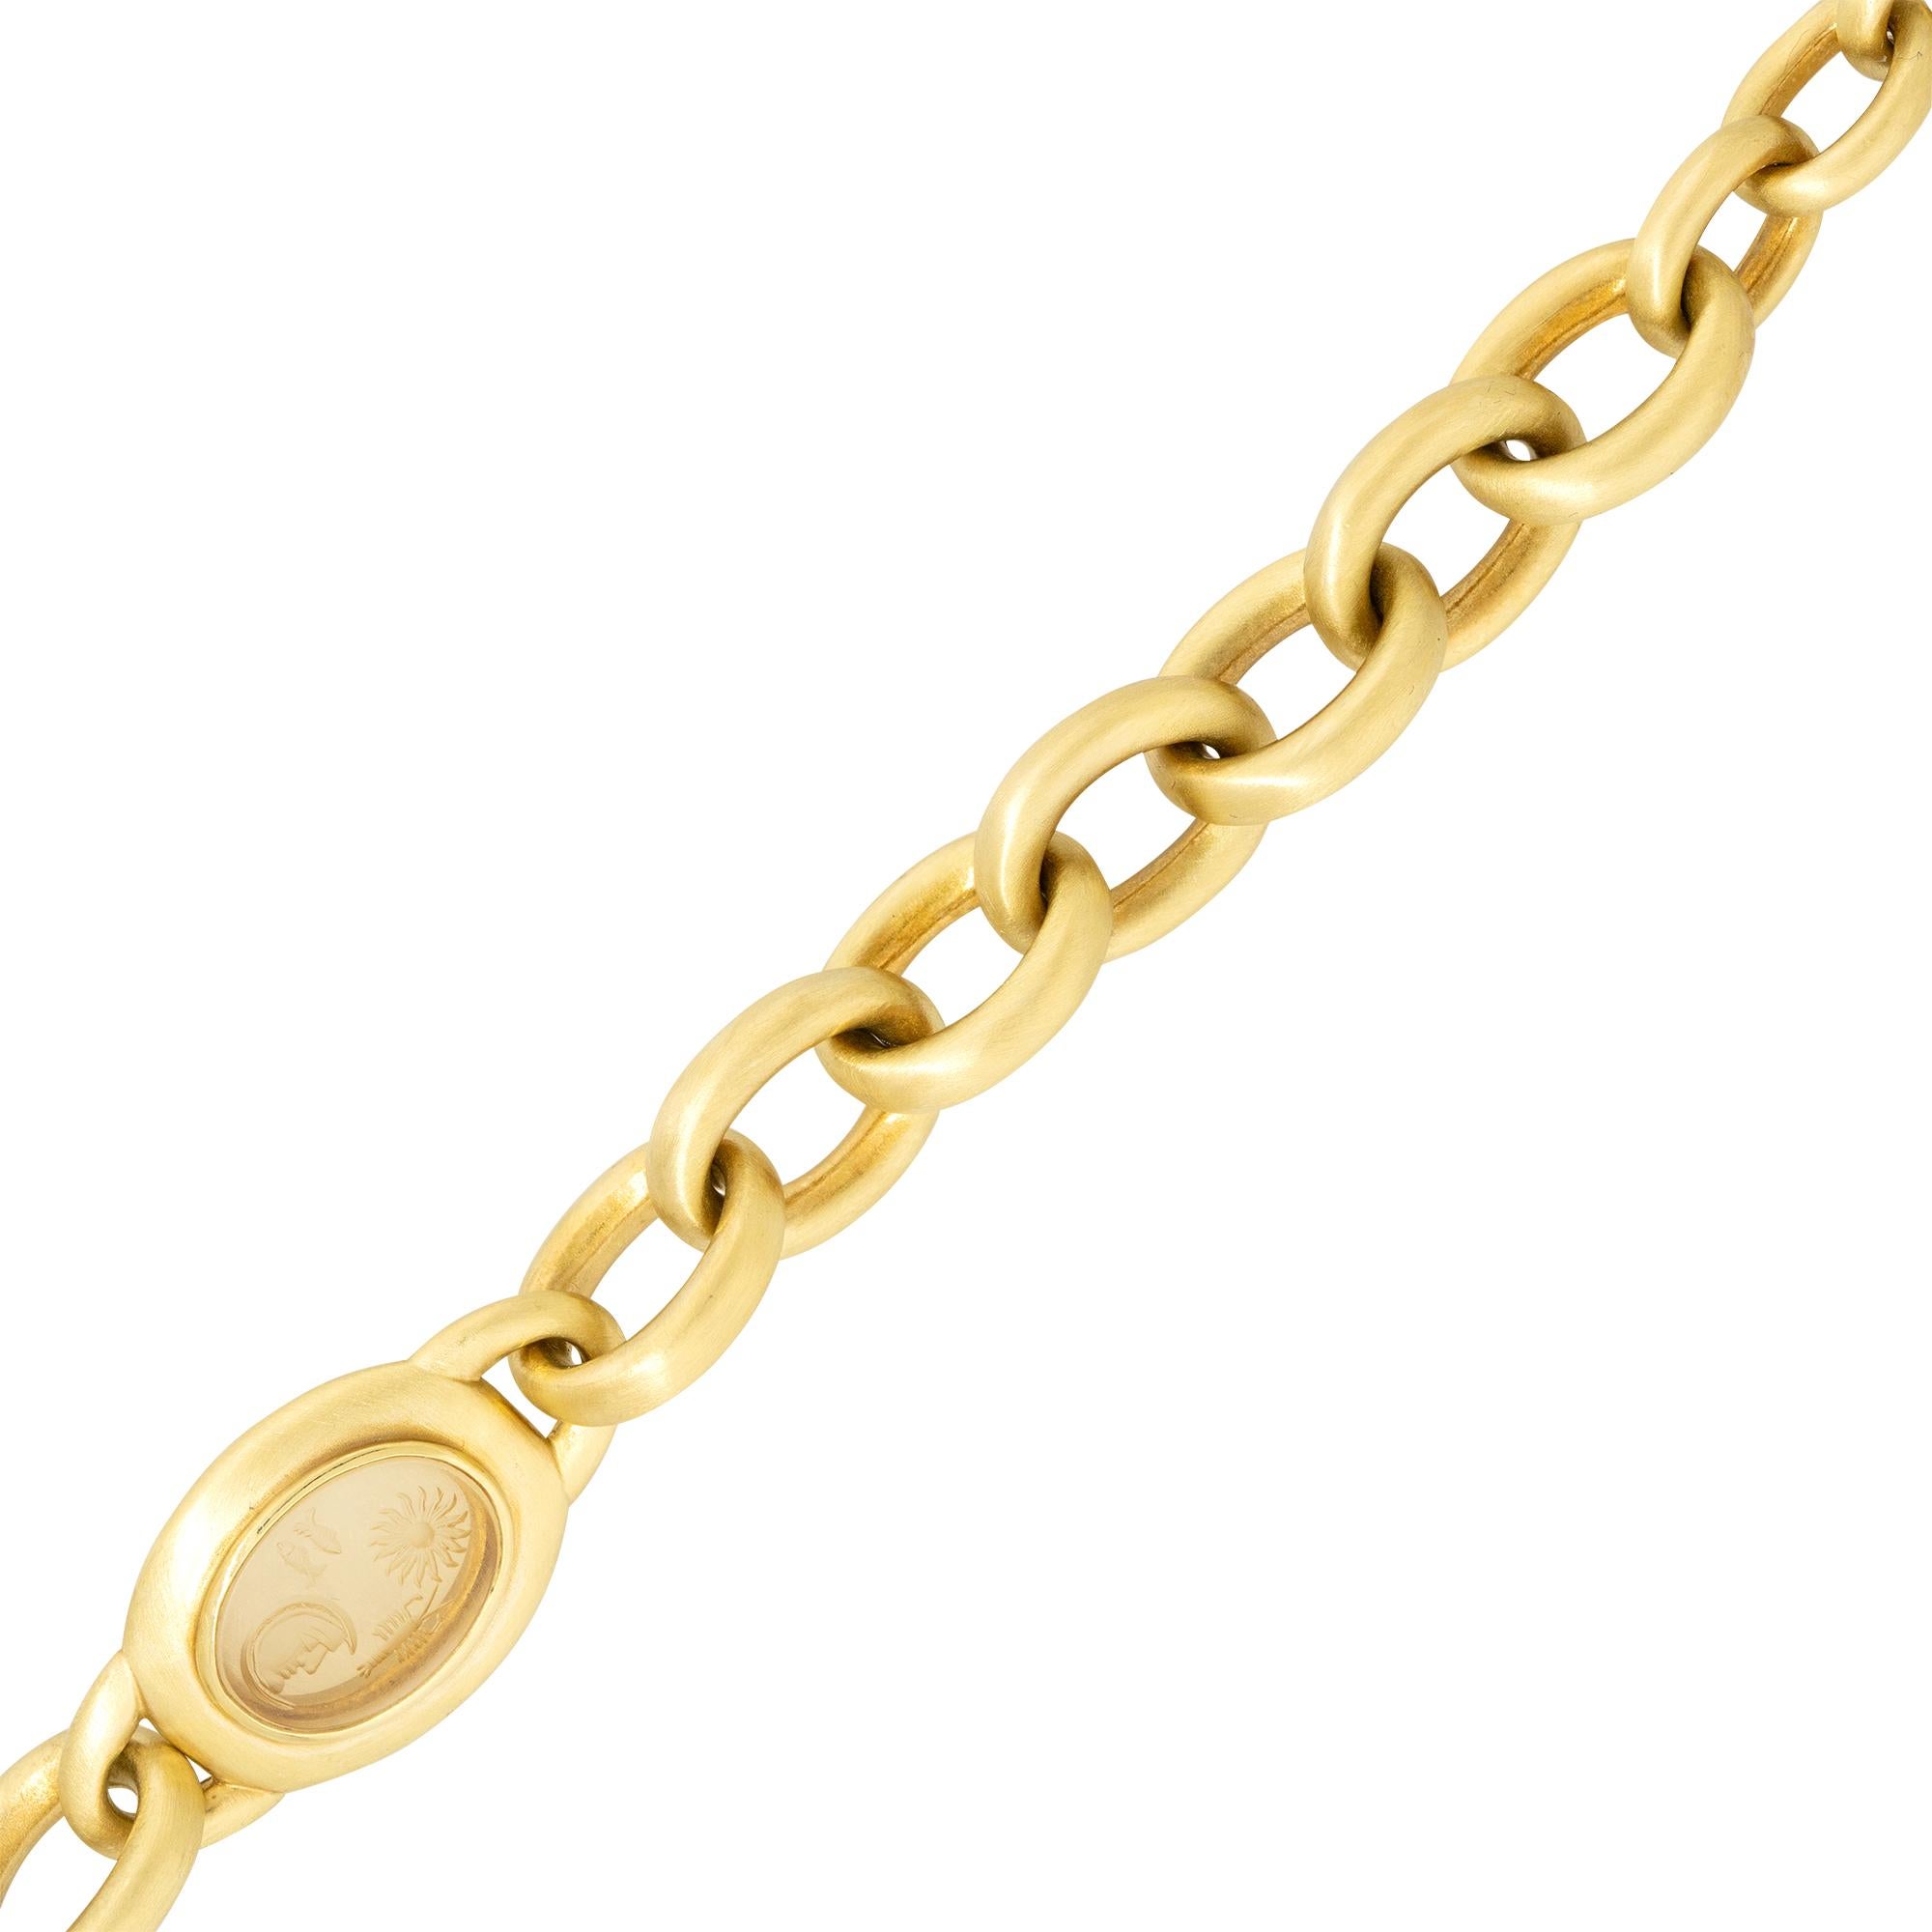 Ce bracelet à maillons solides, unique et de grande taille, est parfait pour tous ceux qui souhaitent se démarquer. Ce bracelet se distingue par sa station en cristal taillé et son fermoir à bascule serti de diamants. 

Barry Kieselstein - Bracelet